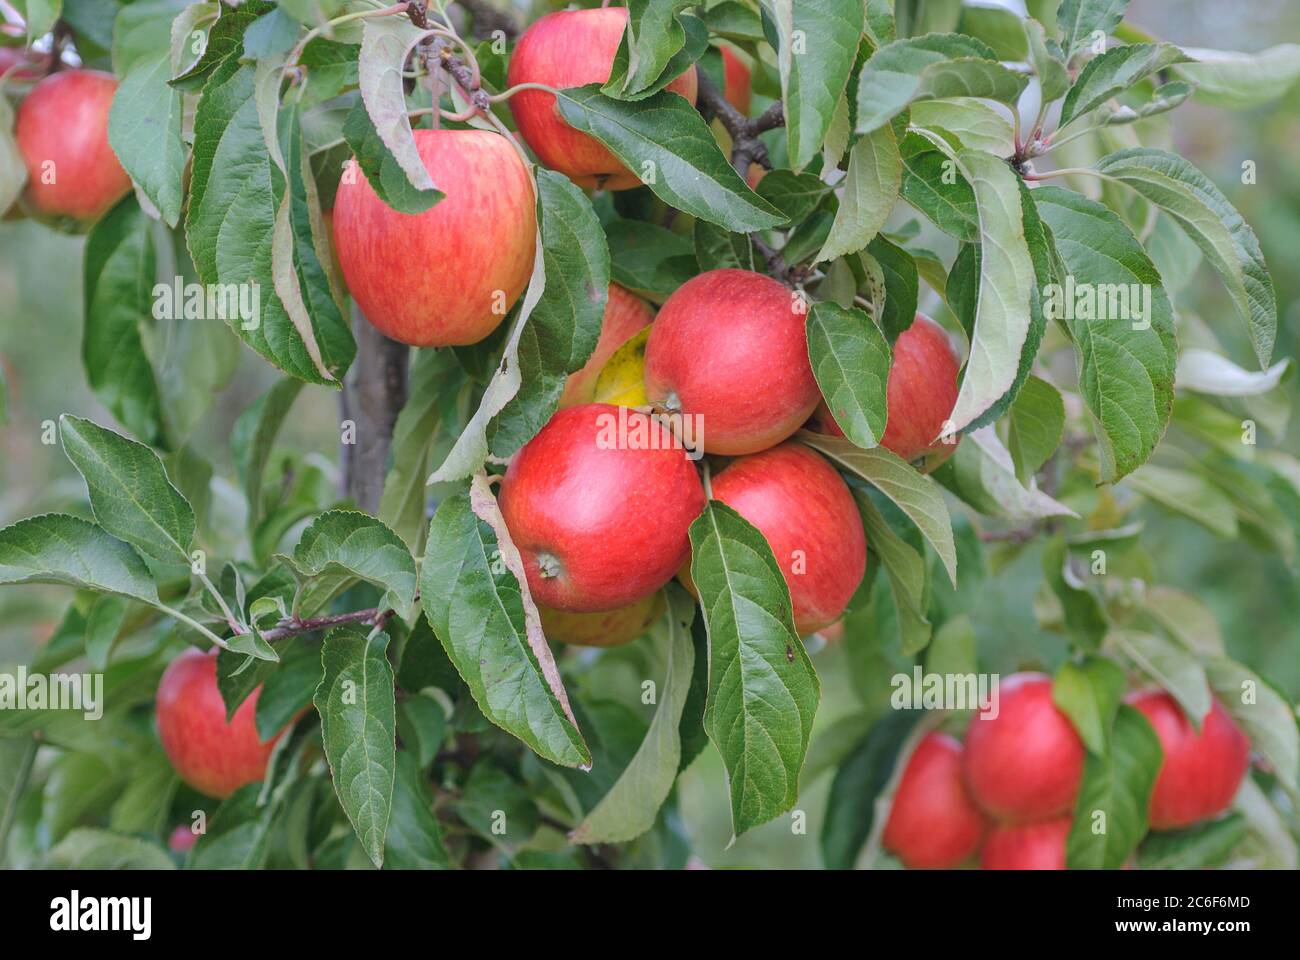 Zwerg-Apfel, Malus domestica Dalinip, Dwarf apple, Malus domestica Dalinip Stock Photo